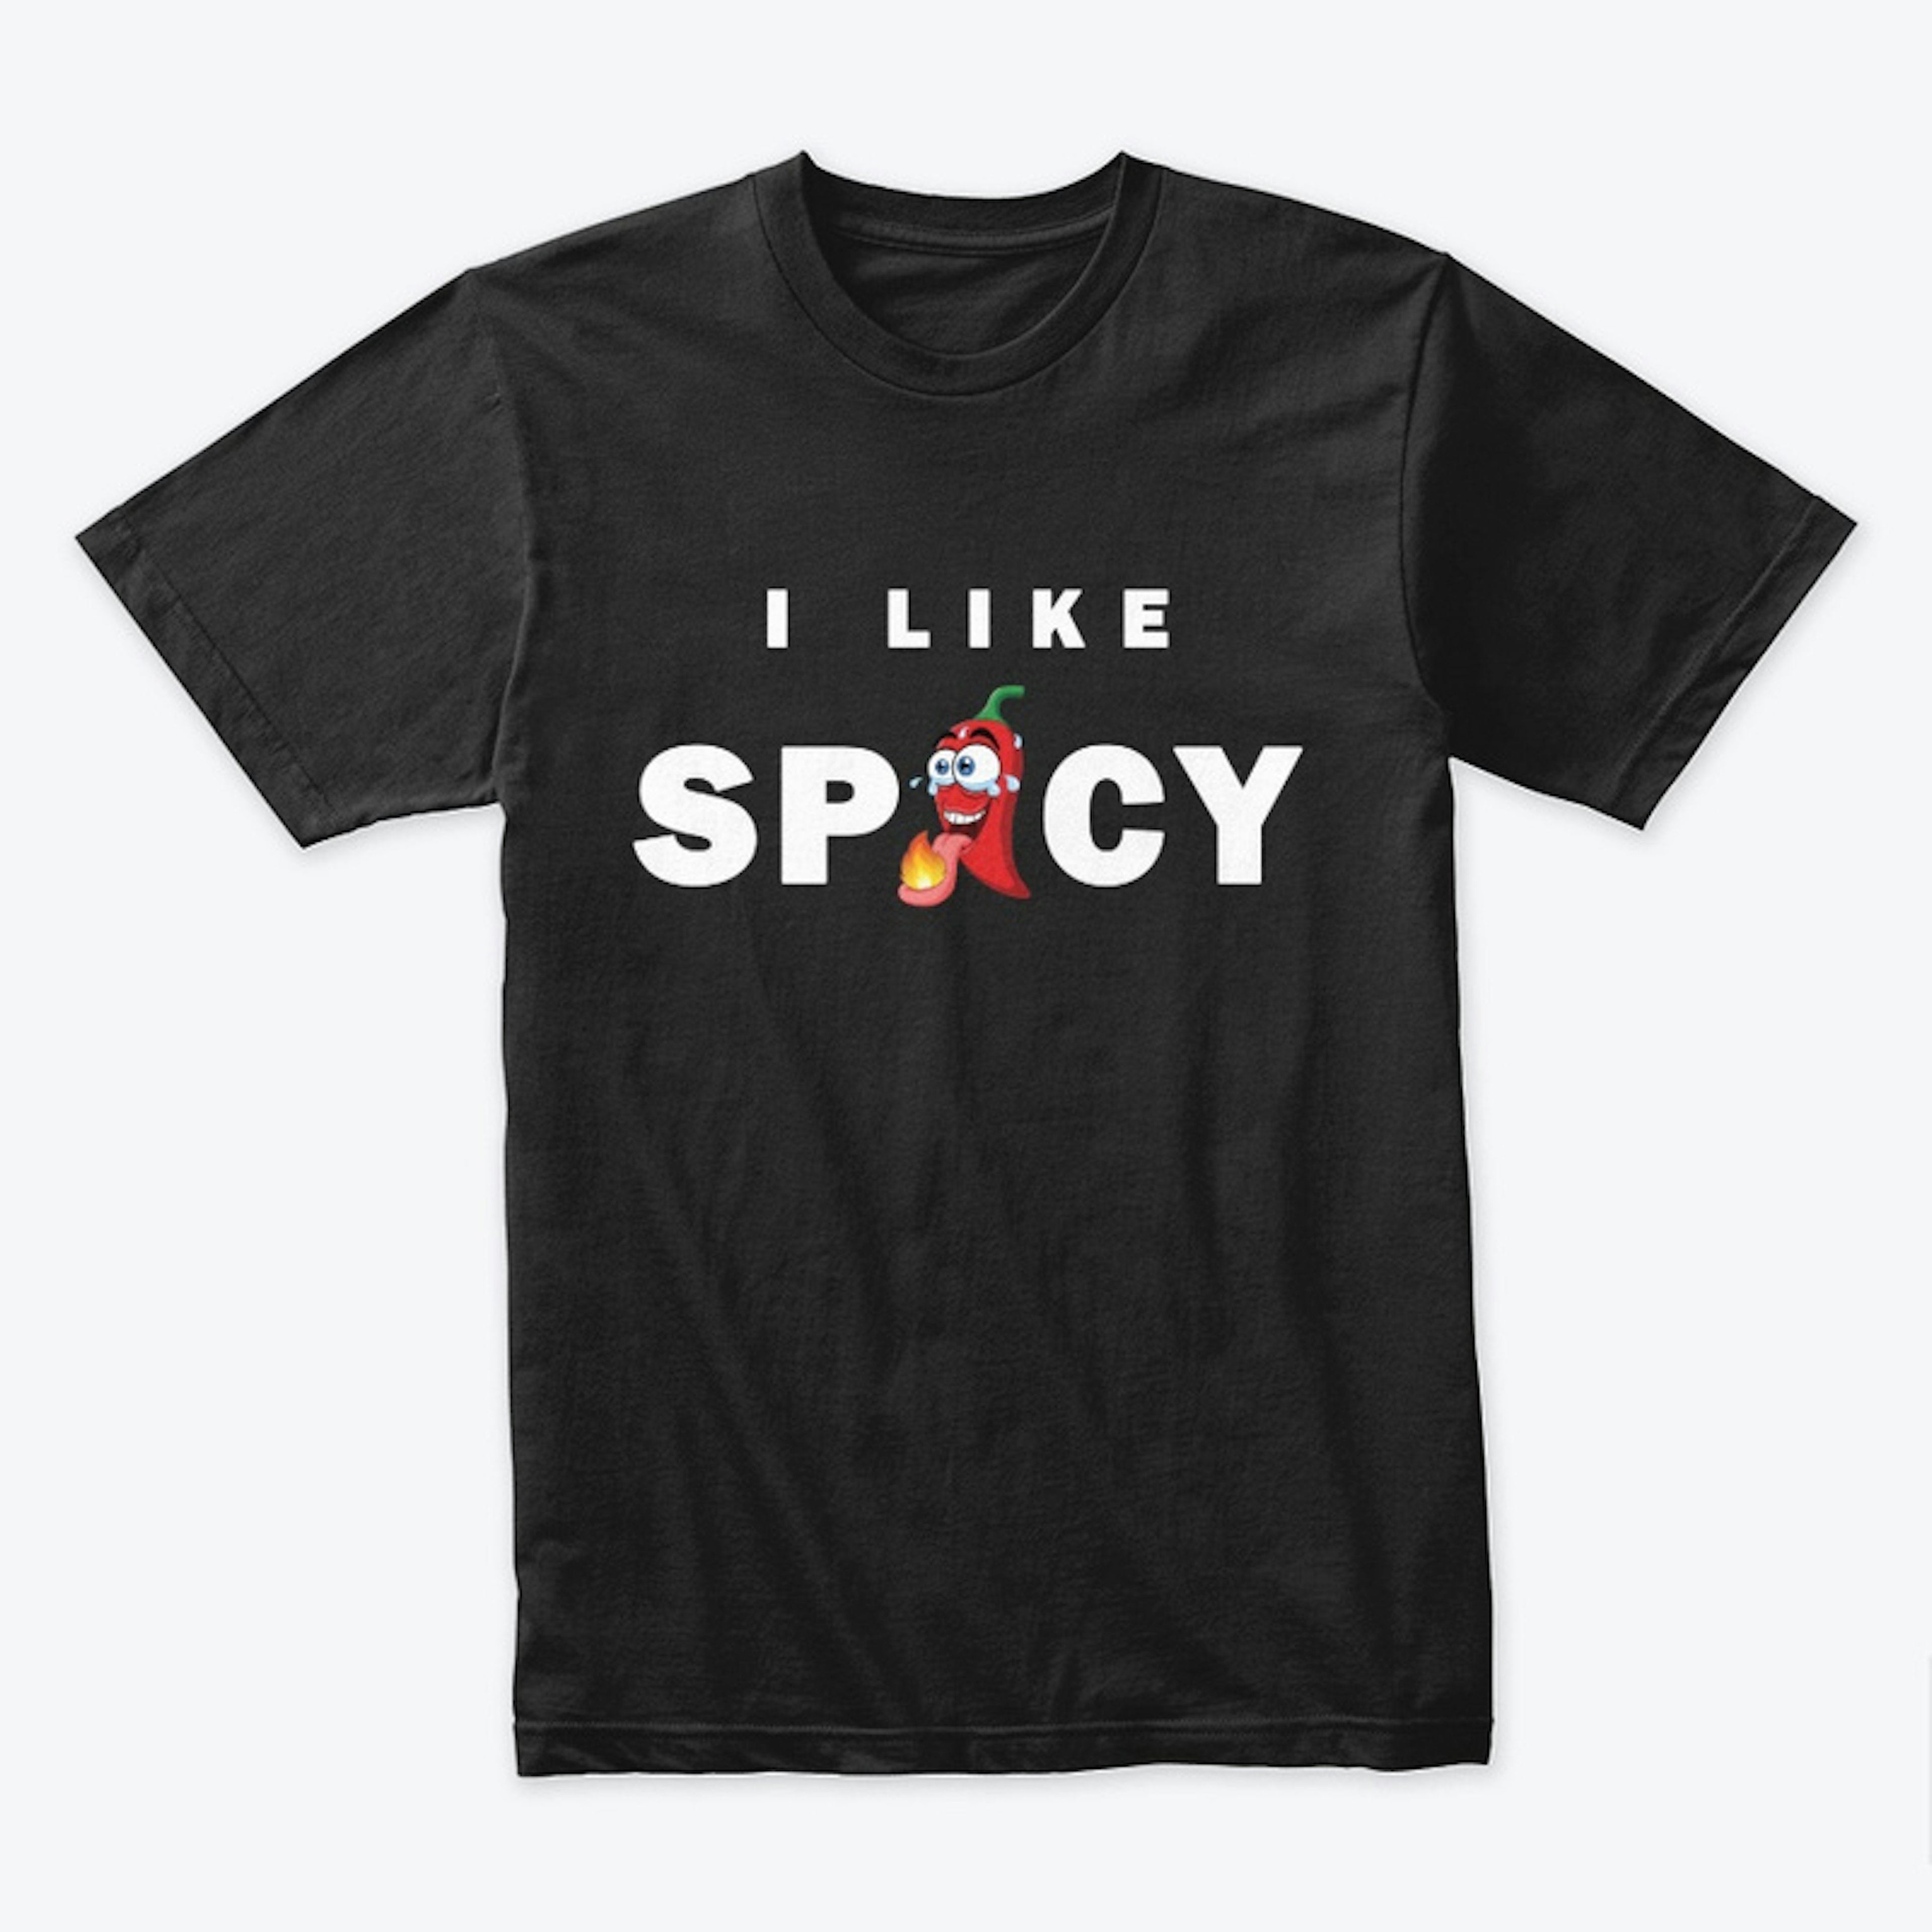 I like spicy